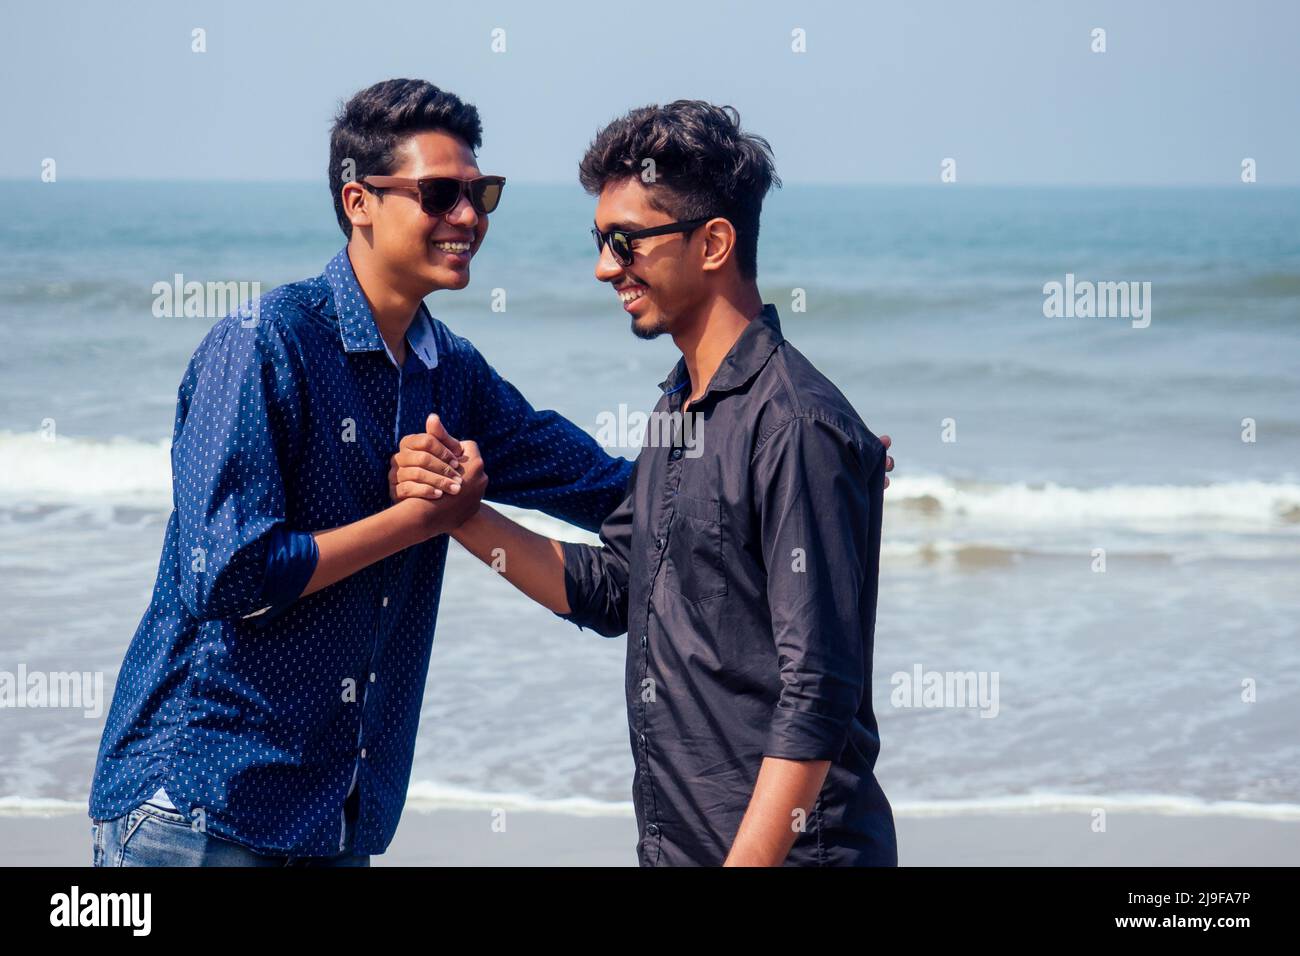 Hali heureux deux indiens élégants garçons jeunes amis embrassant sur la plage au bord de la mer.longtemps attendu réunion diwali des frères en Inde Goa tropical Banque D'Images